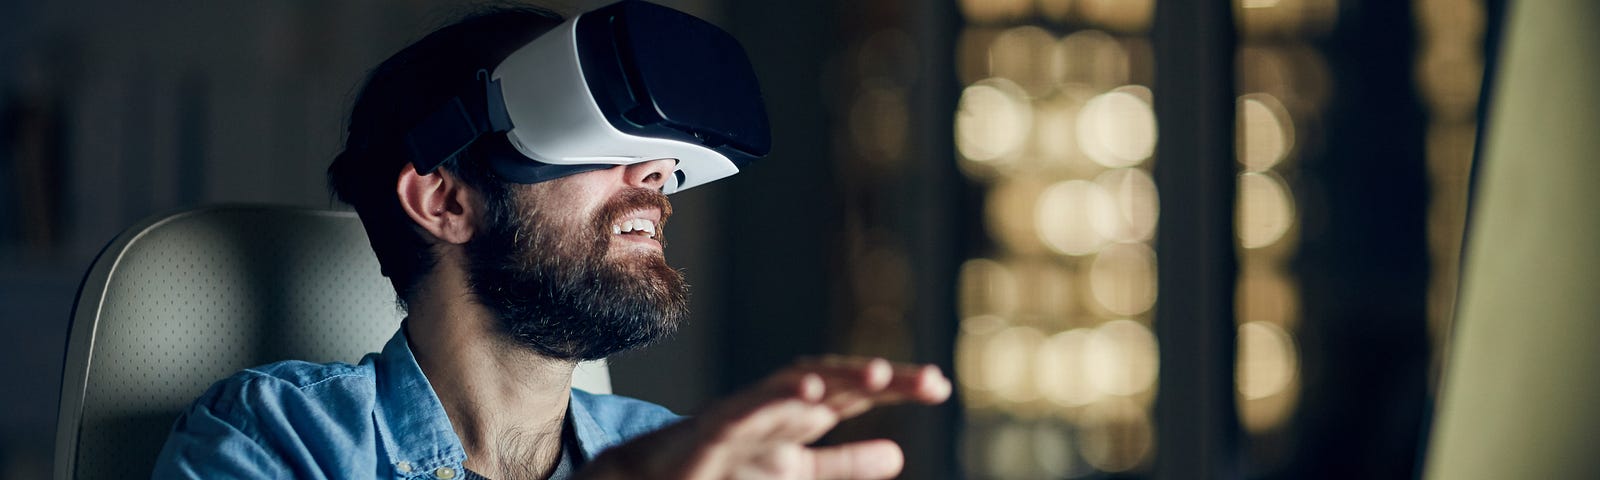 A man wearing virtual reality goggles at his desk.